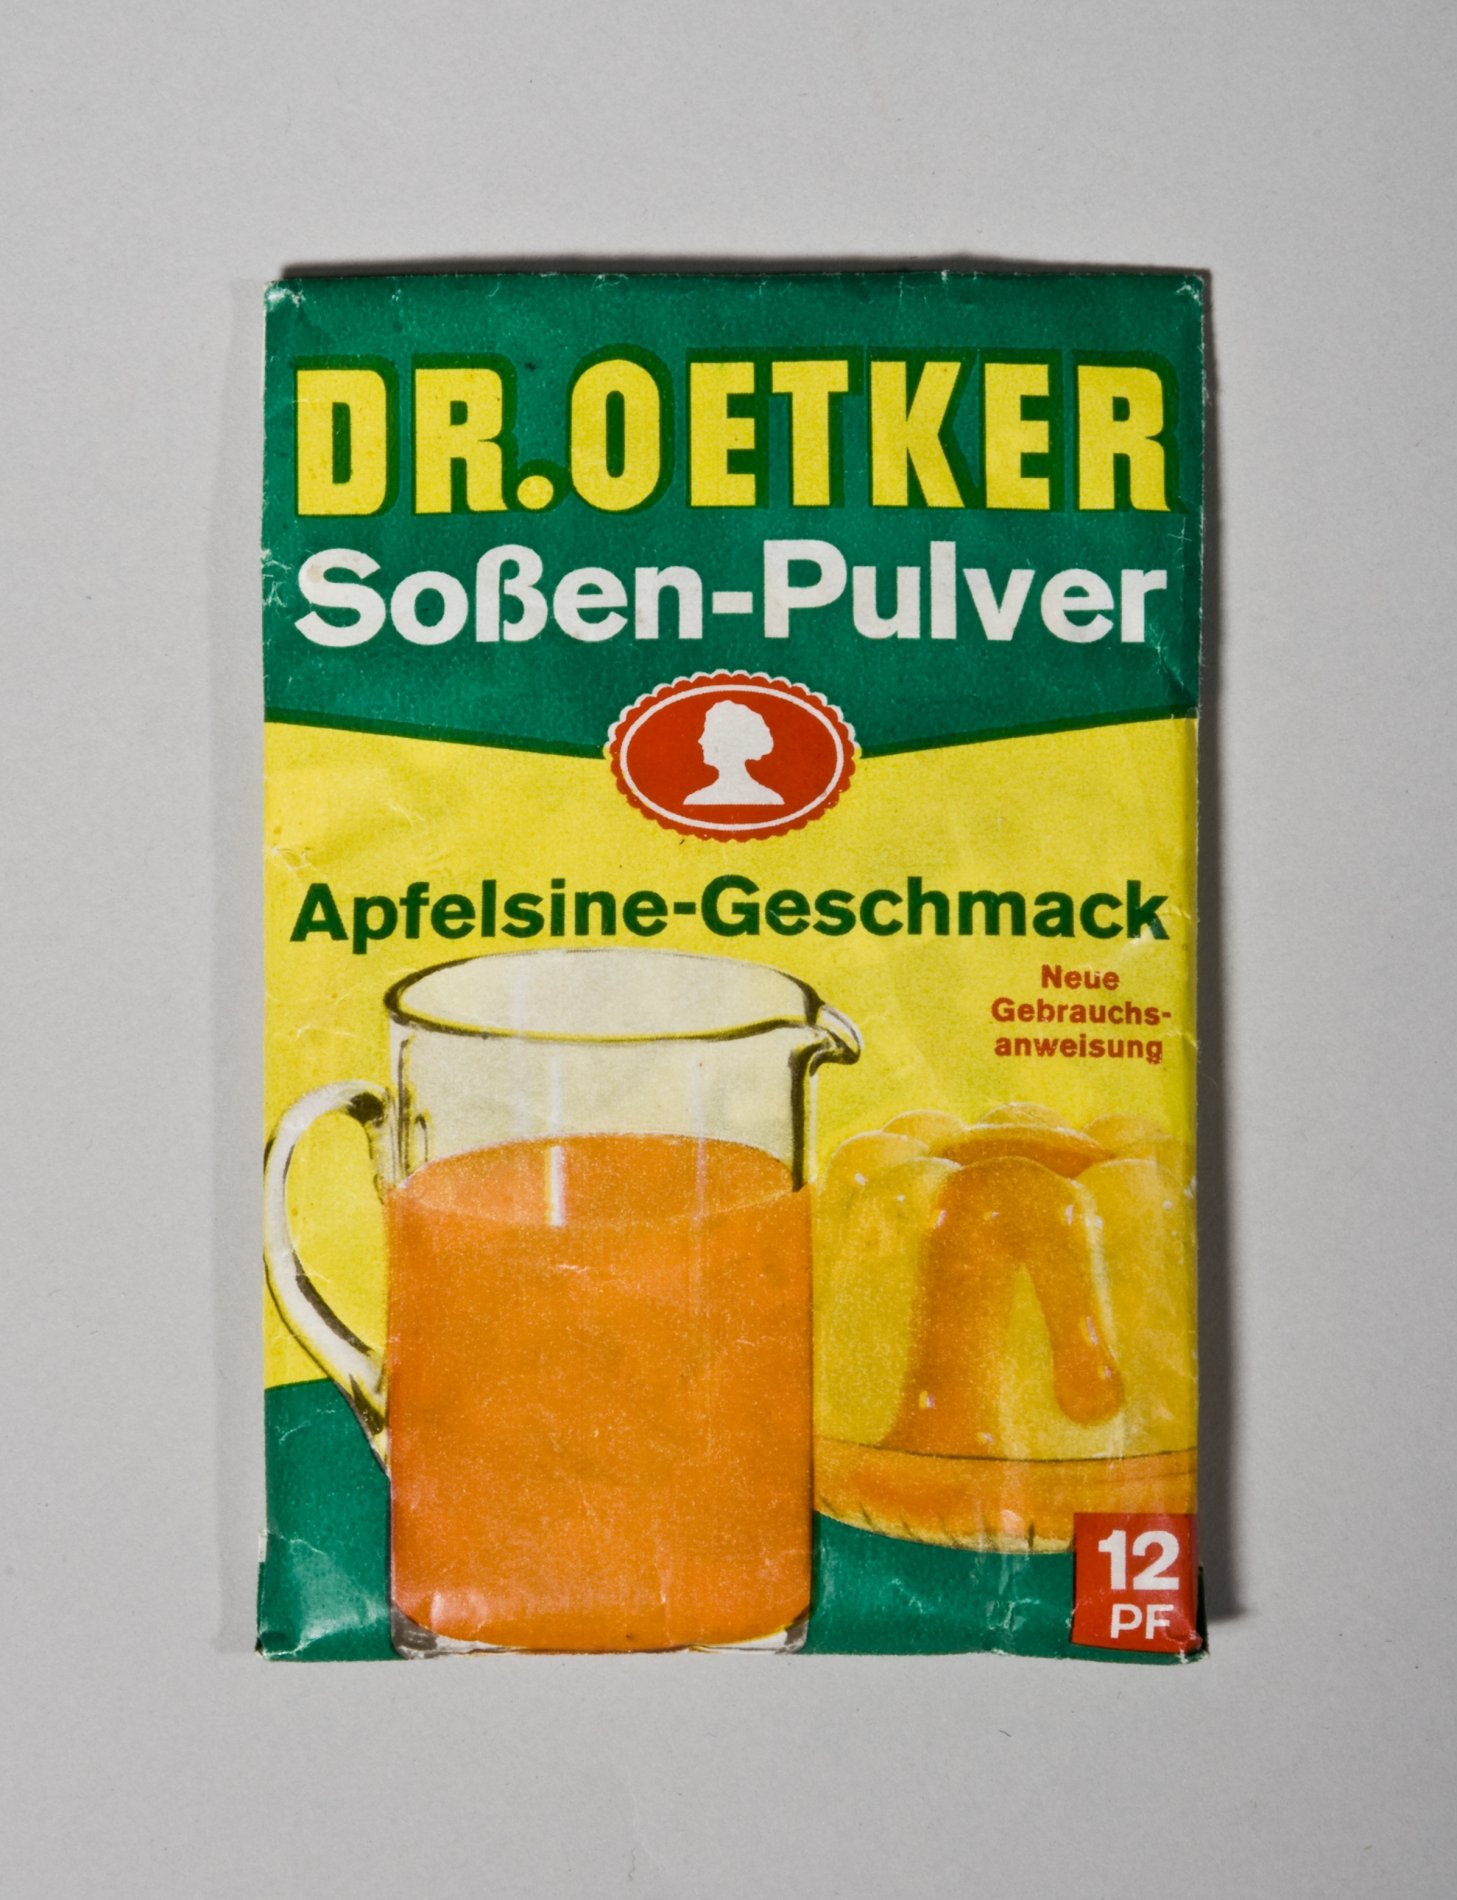 Päckchen "Soßen-Pulver Apfelsine-Geschmack" von "Dr. Oetker" (Stiftung Domäne Dahlem - Landgut und Museum, Weiternutzung nur mit Genehmigung des Museums CC BY-NC-SA)